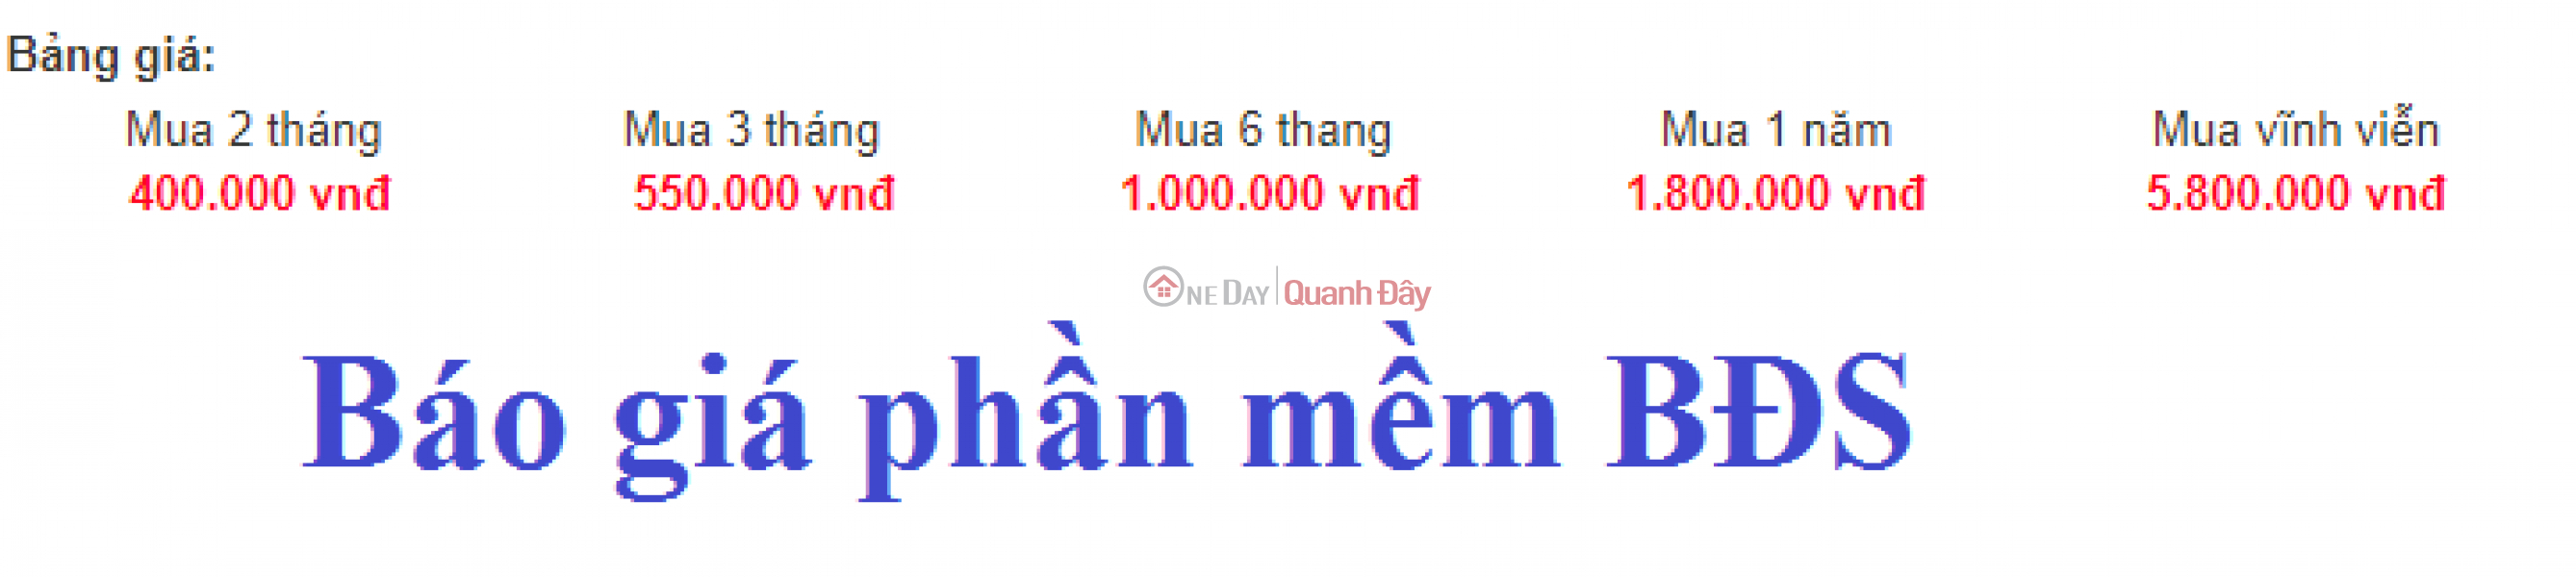 Các phần mềm hỗ trợ đăng tin maketing hiện tại bên e cung cấp | Việt Nam, Bán ₫ 1,58 tỷ